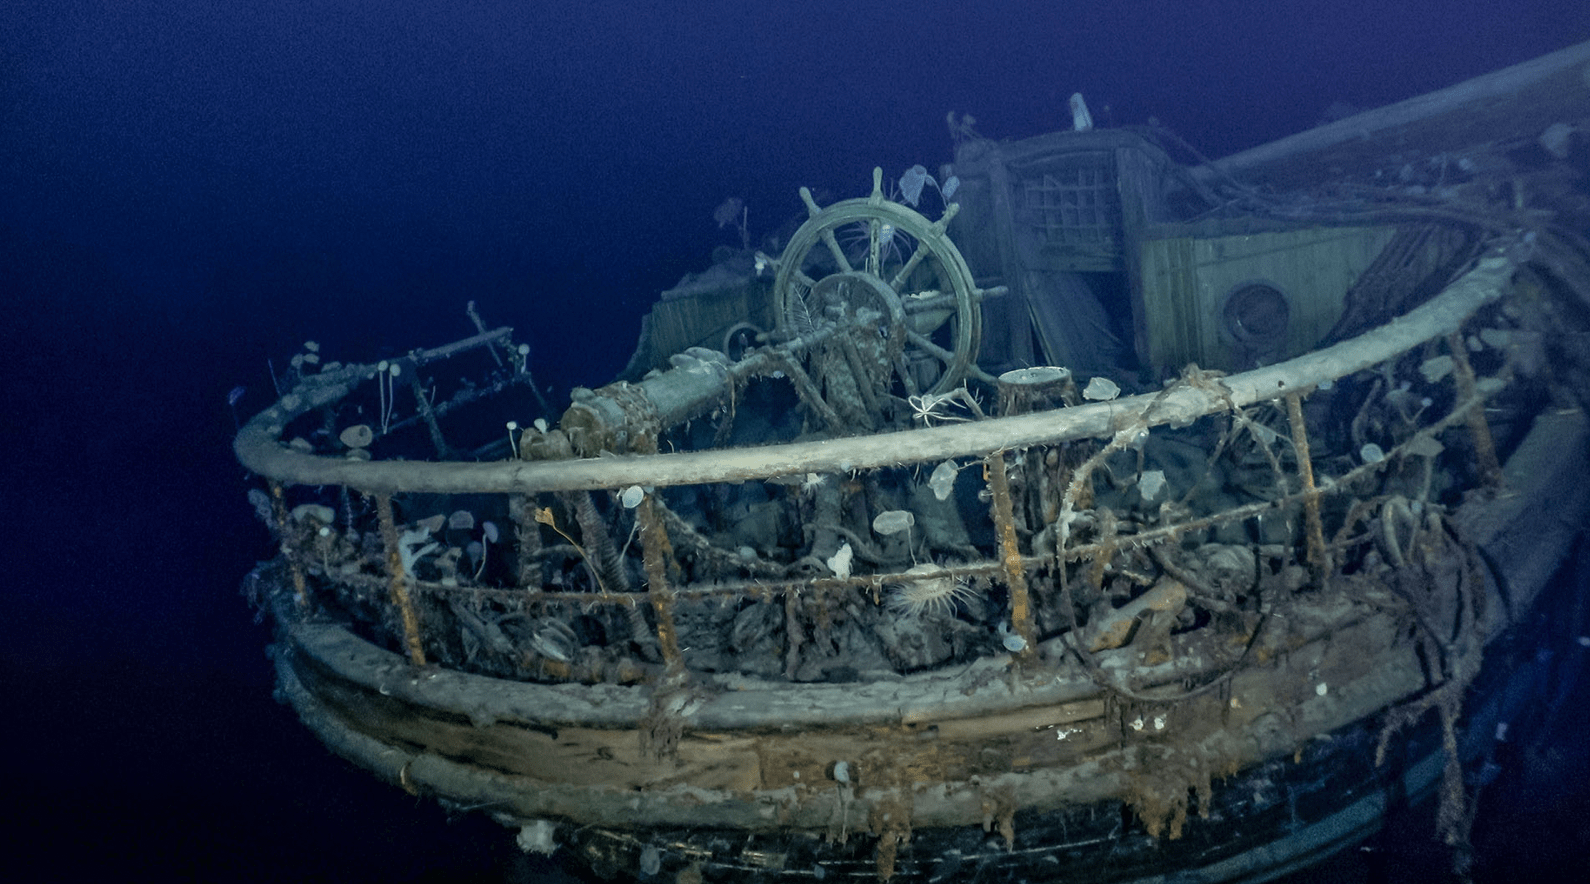 Shipwreck photos